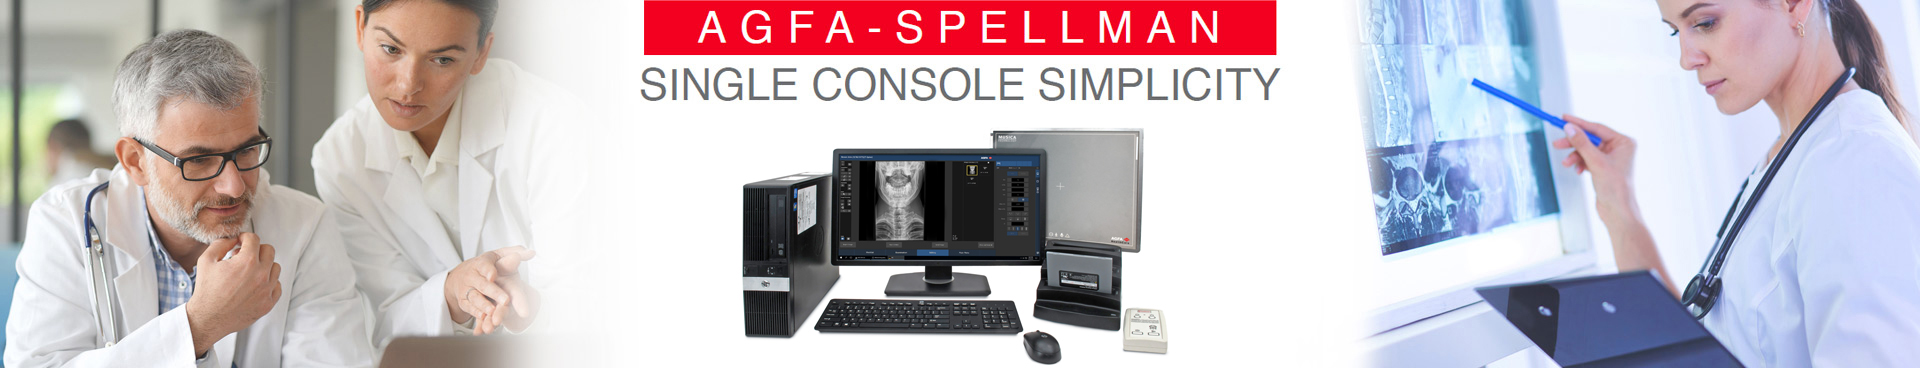 AGFA-Spellman Single Console Simplicity